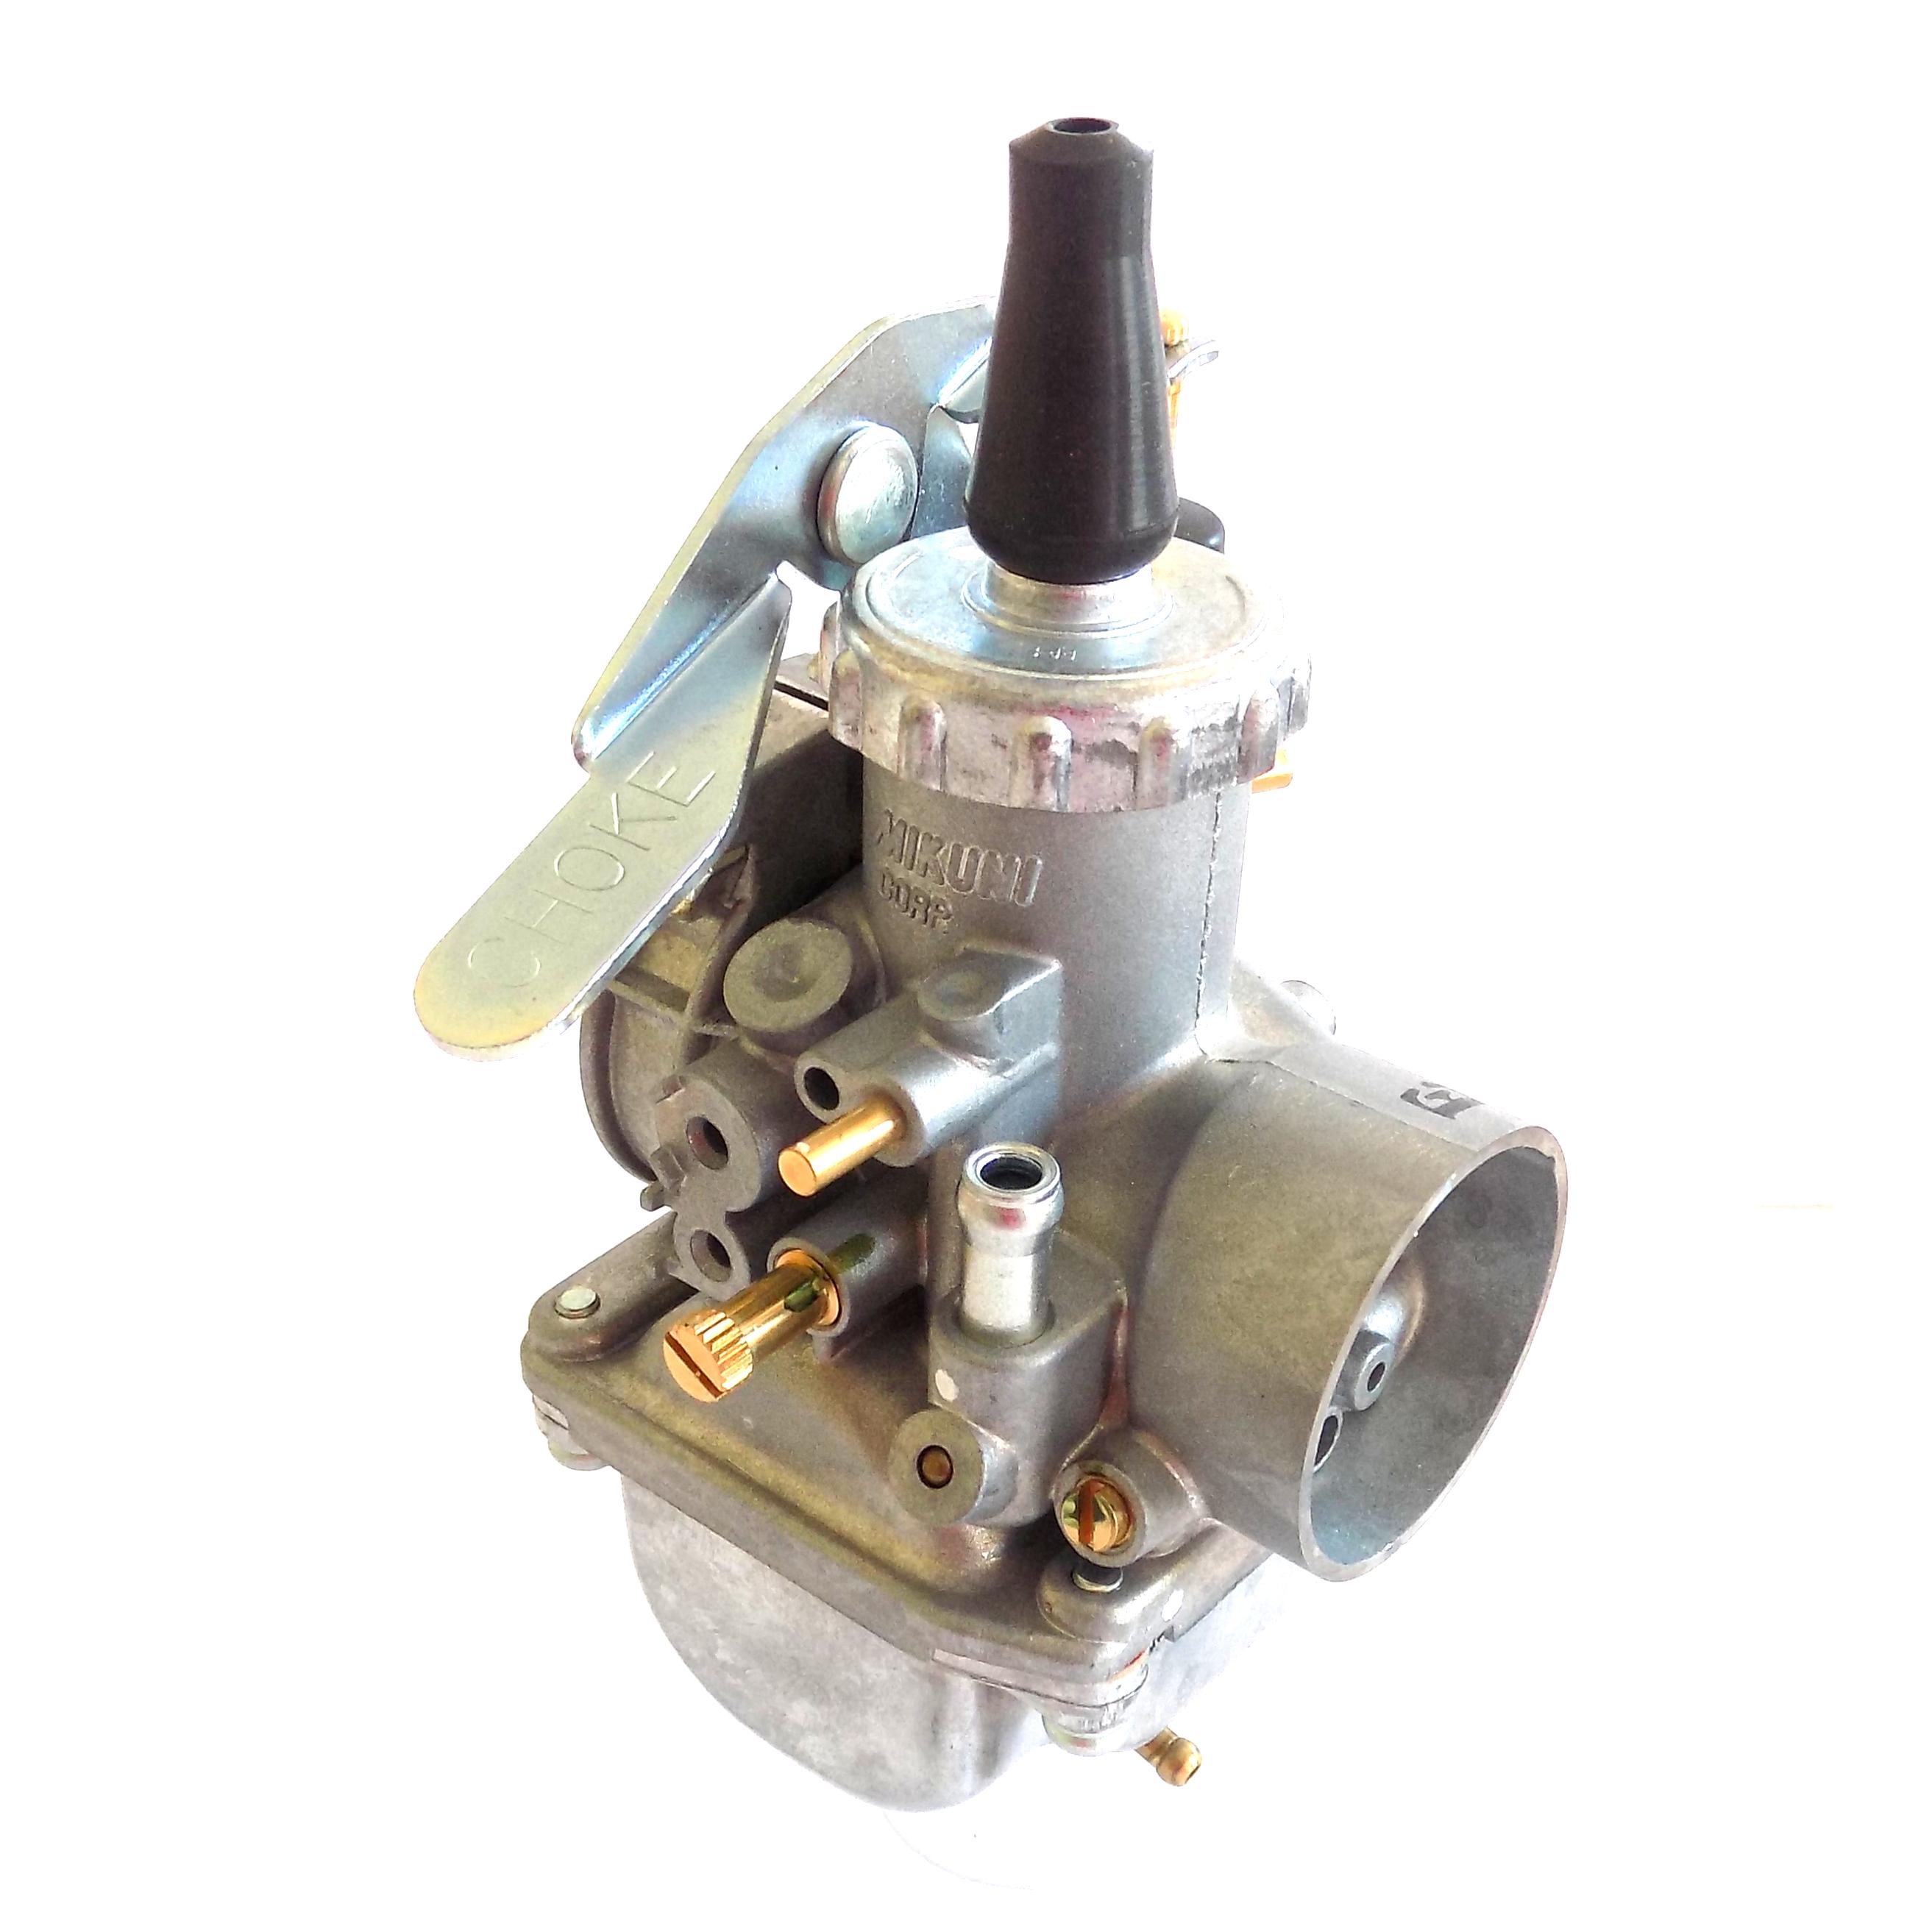 How do you adjust a carburetor? Nozzle sets for DellOrto Mikuni